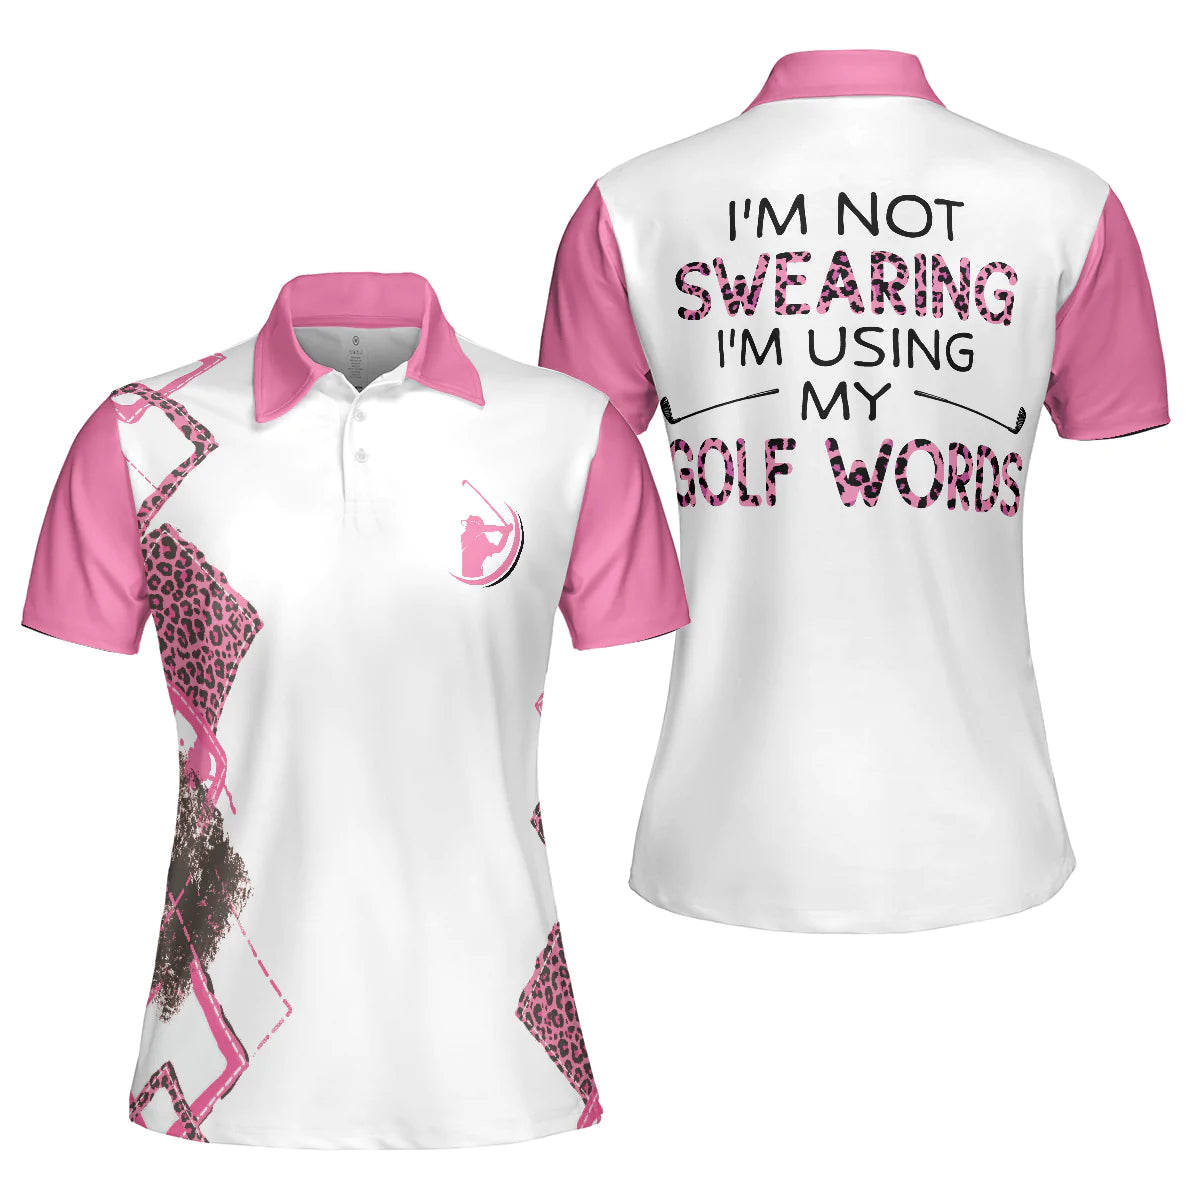 Golf Women Polo Shirt, I'm A Normal Golf Girl Except Much Cooler Short -  Cerigifts